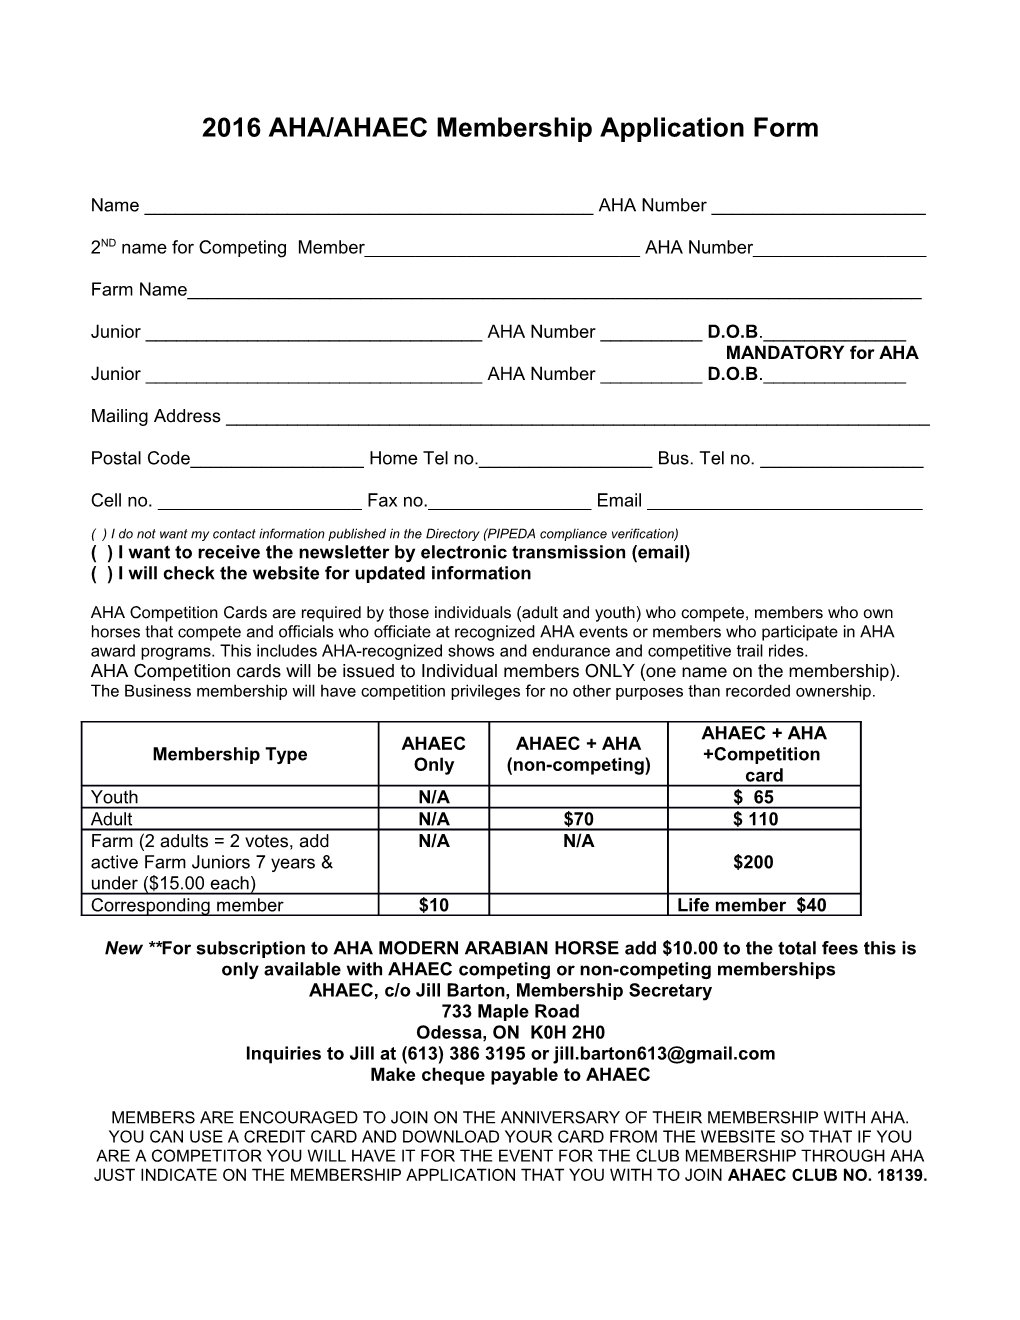 2006 AHA/AHAEC Membership Application Form